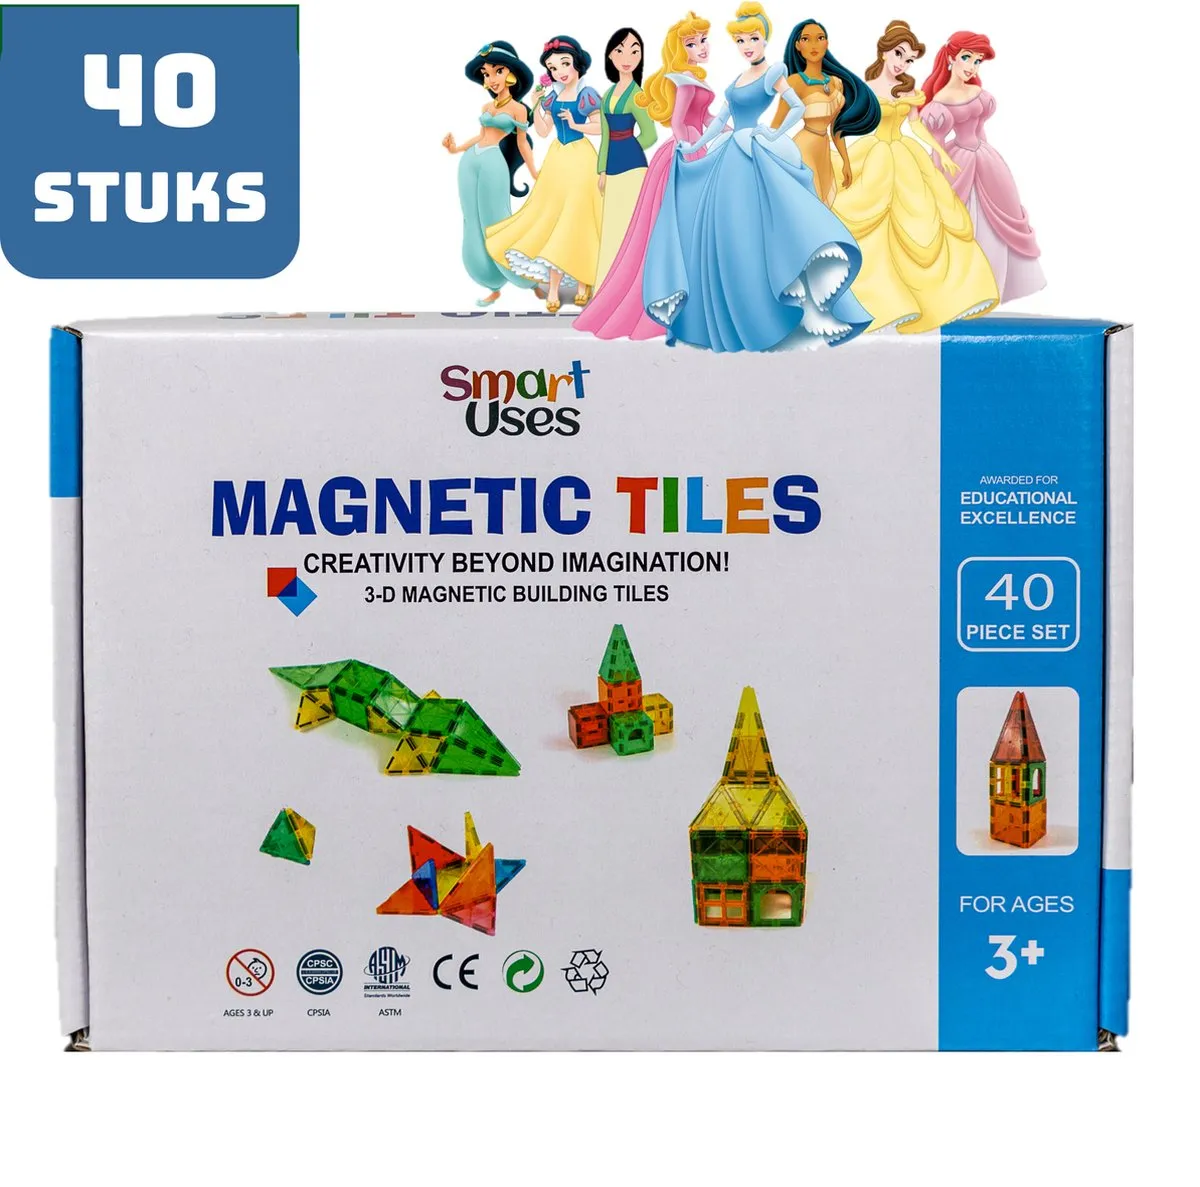 Magnetic Tiles - Magnaminds - Magna tiles - Magnetisch Speelgoed – 40 stuks - Constructie speelgoed - Magnetische tegels - Montessori speelgoed - Magnetic toys - Magnetische bouwstenen - Speelgoed 3-12 jaar - Magnetische Bouwblokken - Disney speelgoed